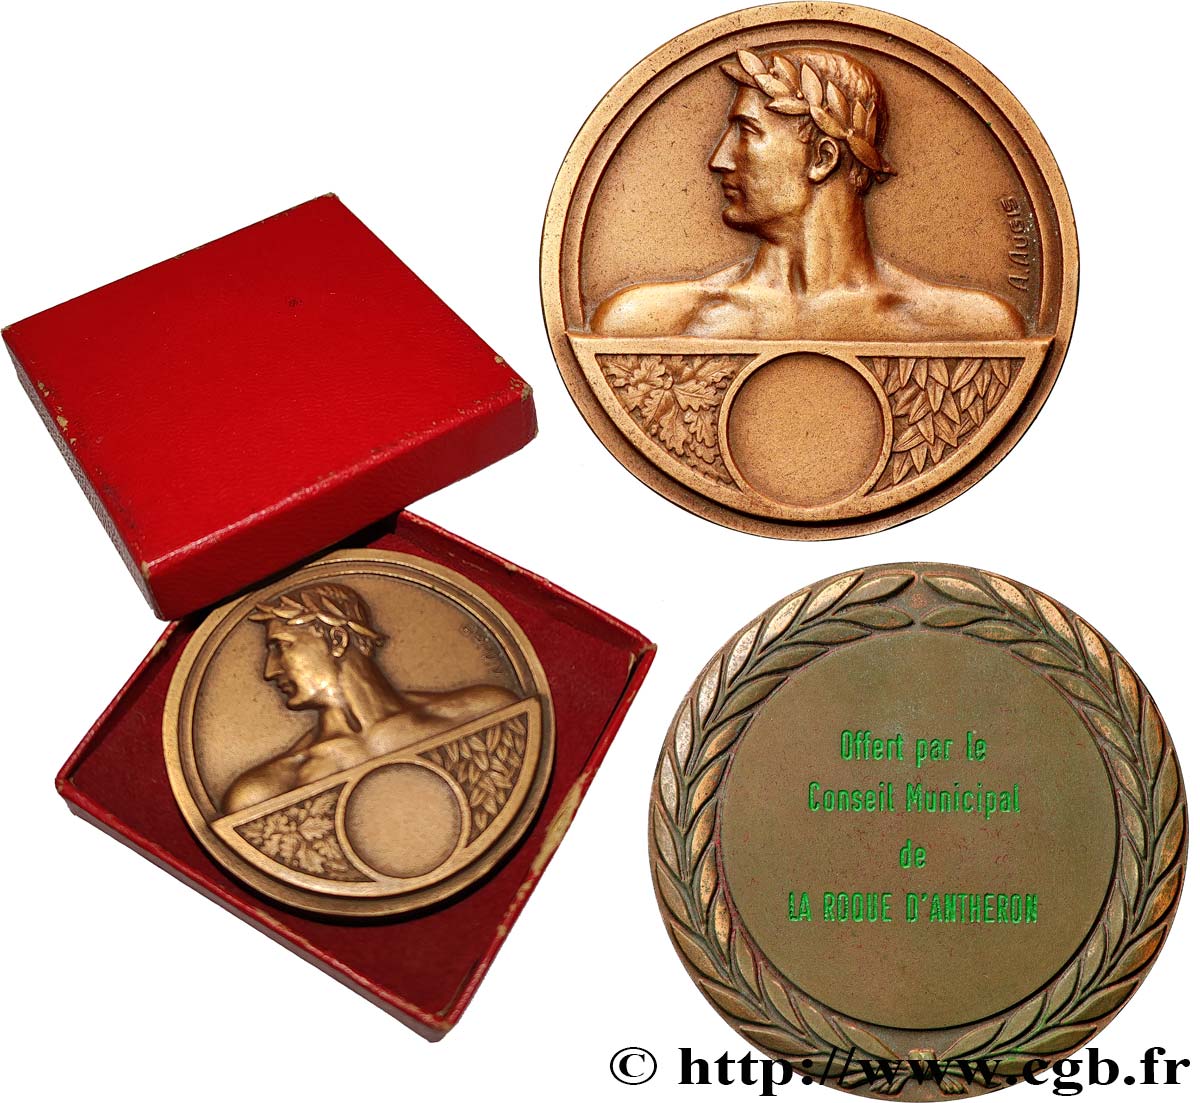 GENERAL, DEPARTEMENTAL OR MUNICIPAL COUNCIL - ADVISORS Médaille, Offert par le conseil municipal de La Roque d’Anthéron AU